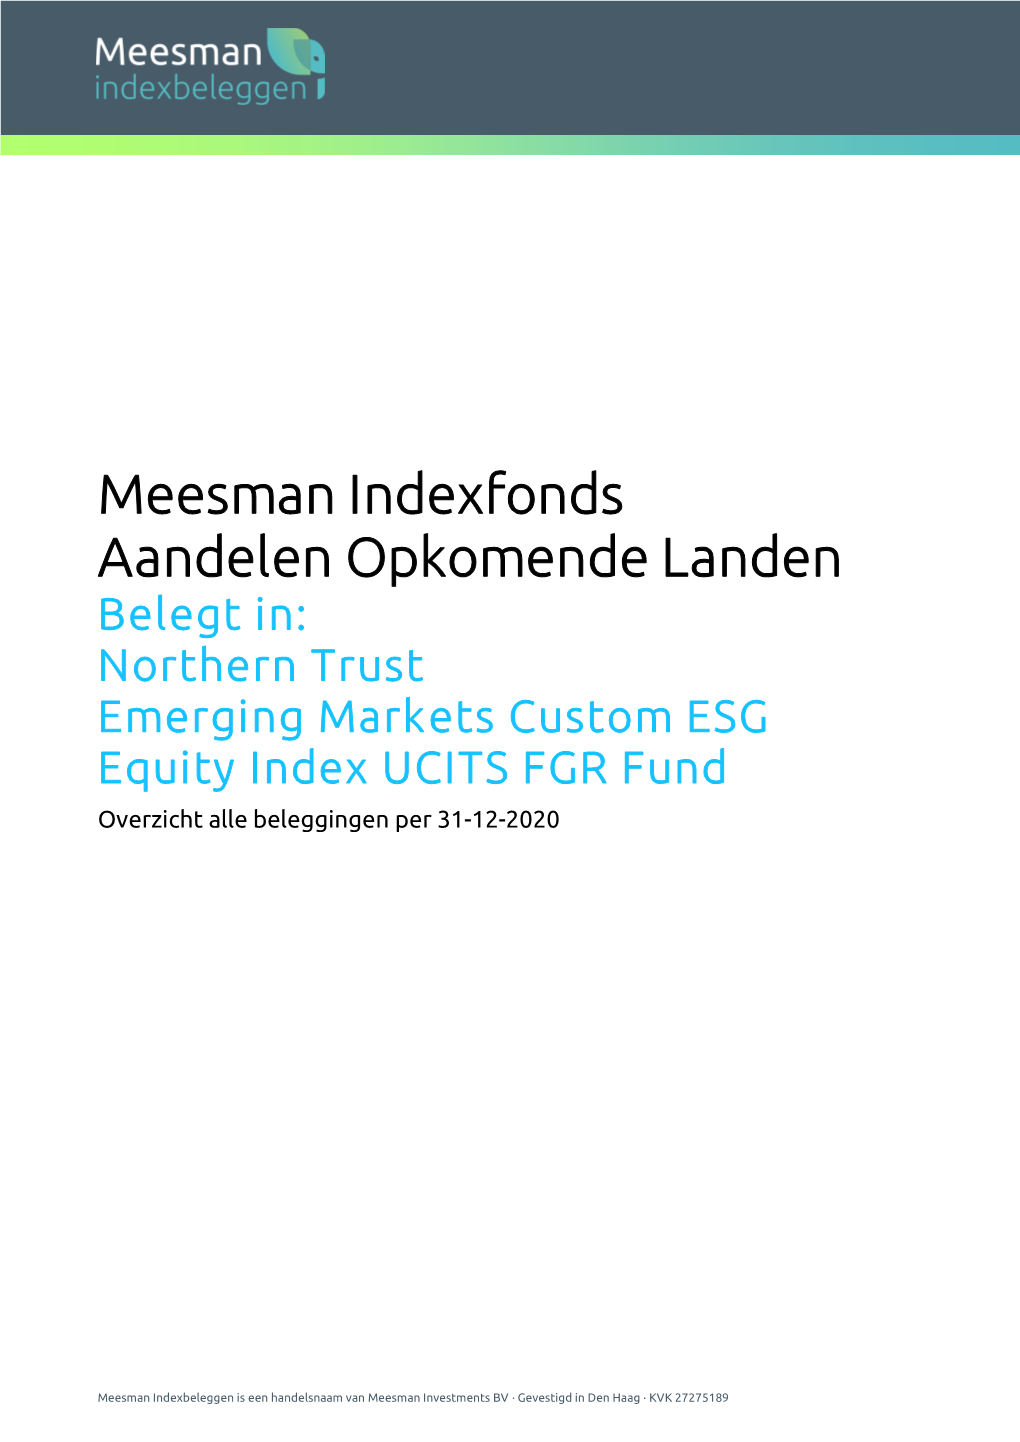 Meesman Indexfonds Aandelen Opkomende Landen